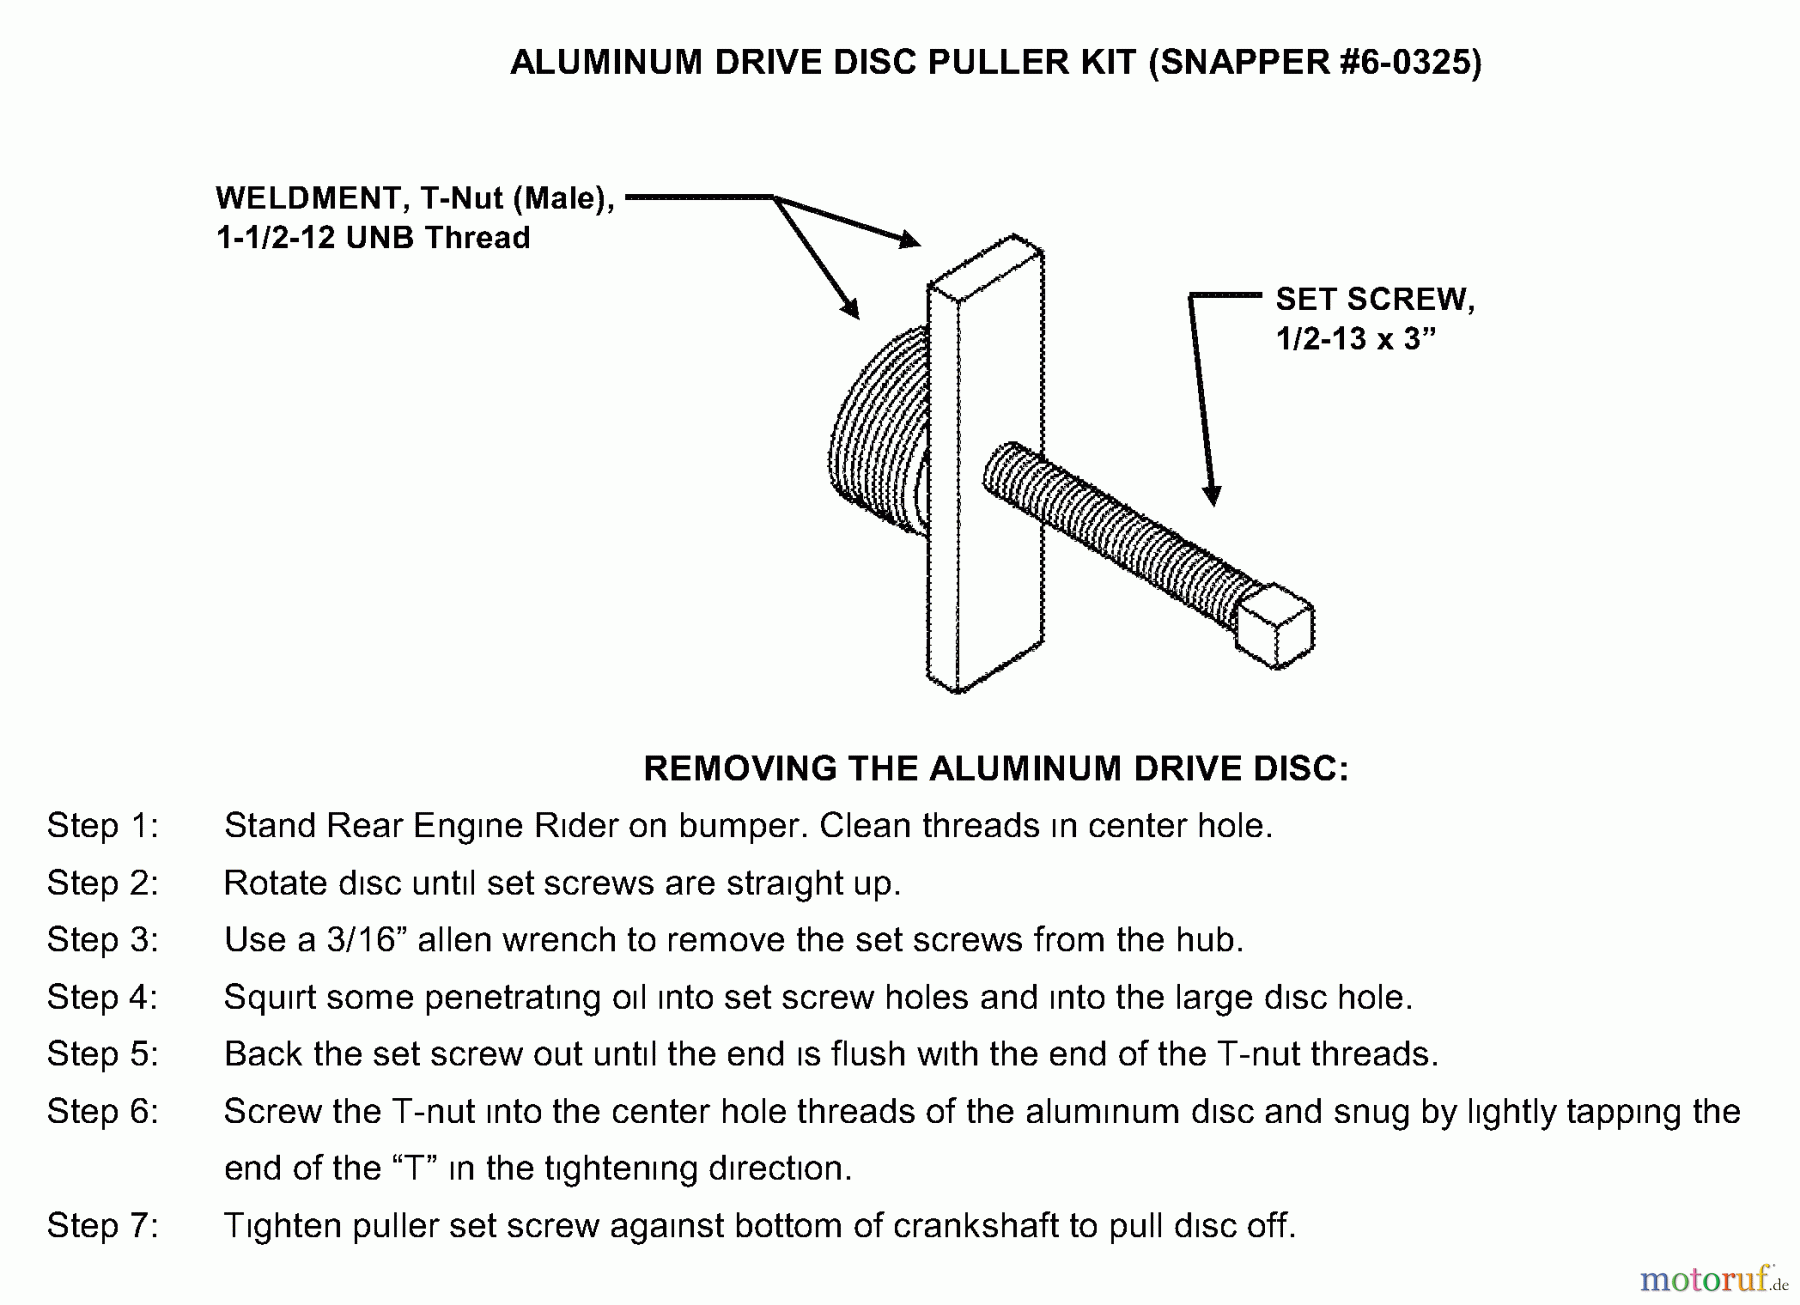  Snapper Zubehör. Rasenmäher 7060325 - Snapper Aluminum Disc Puller Kit Disc Puller Kit